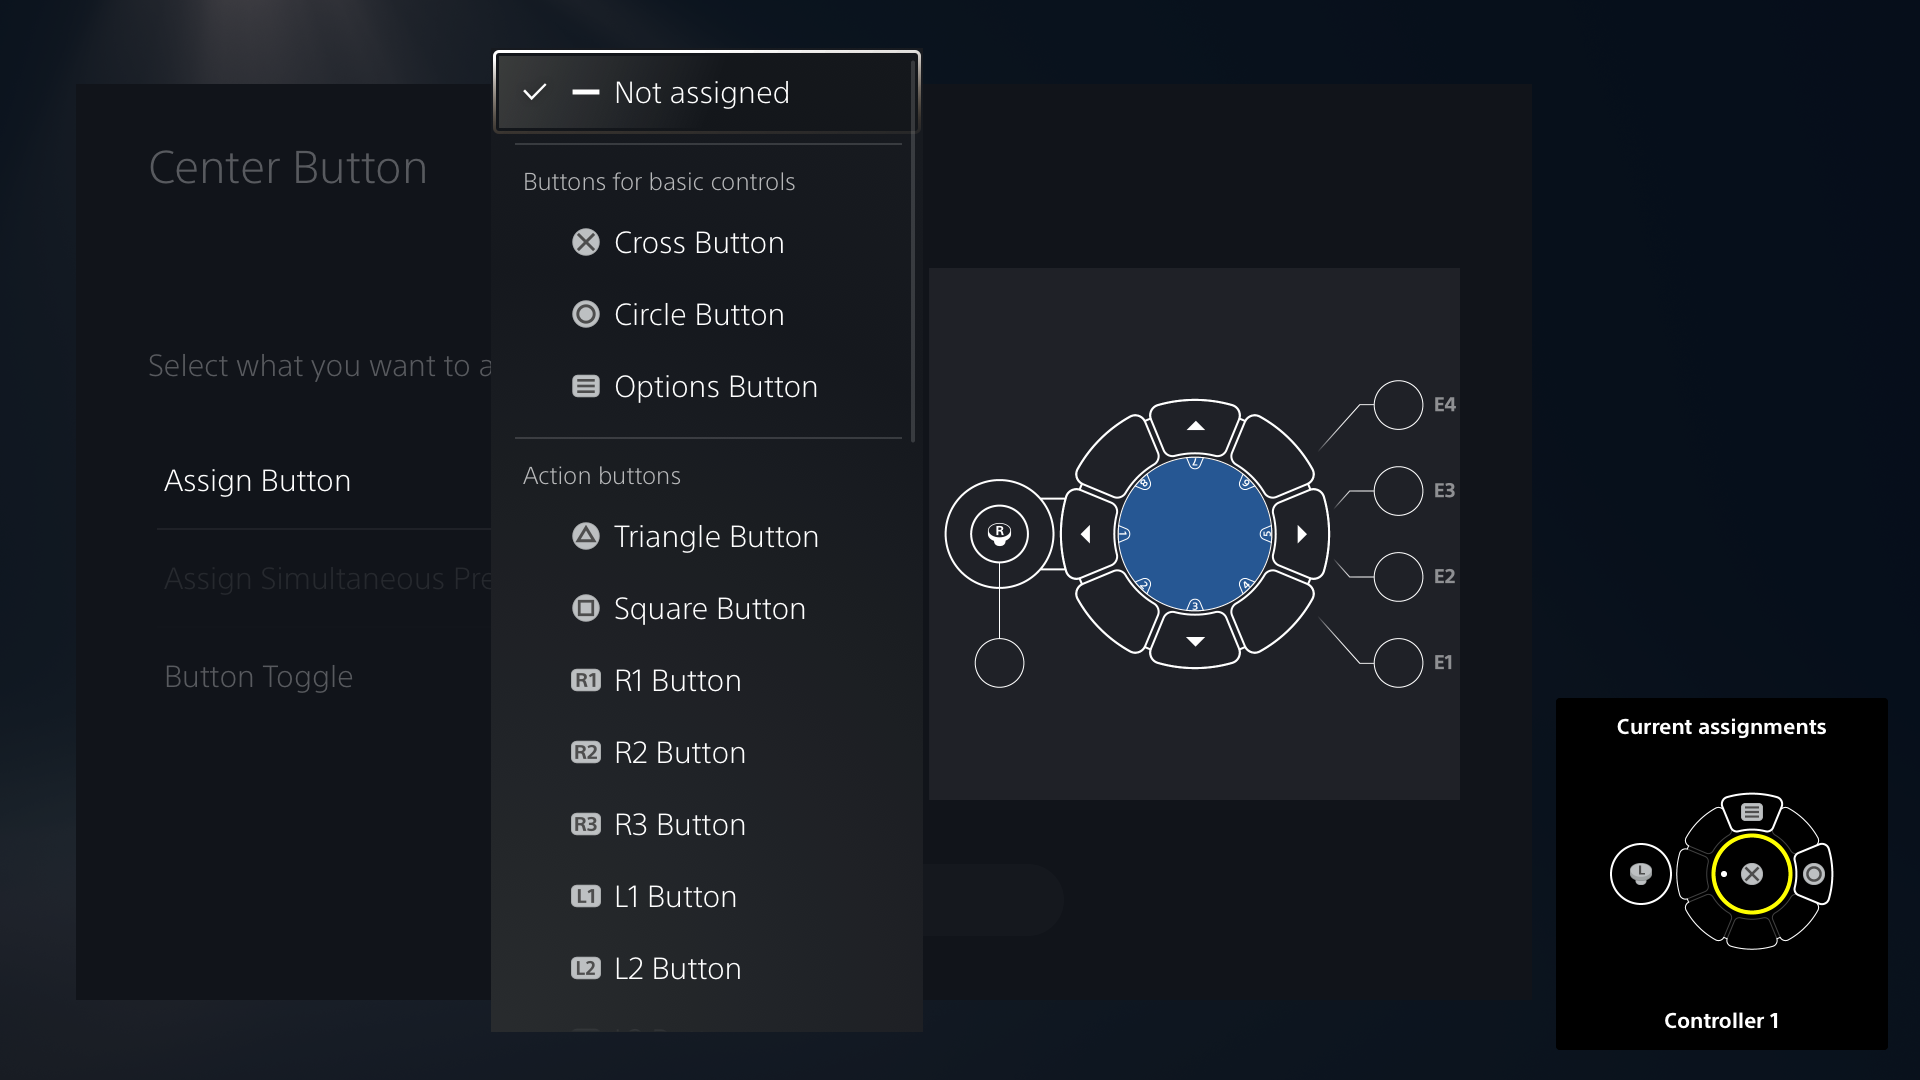  "Immagine dell'interfaccia utente del controller Access che mostra le opzioni di assegnazione dei tasti"